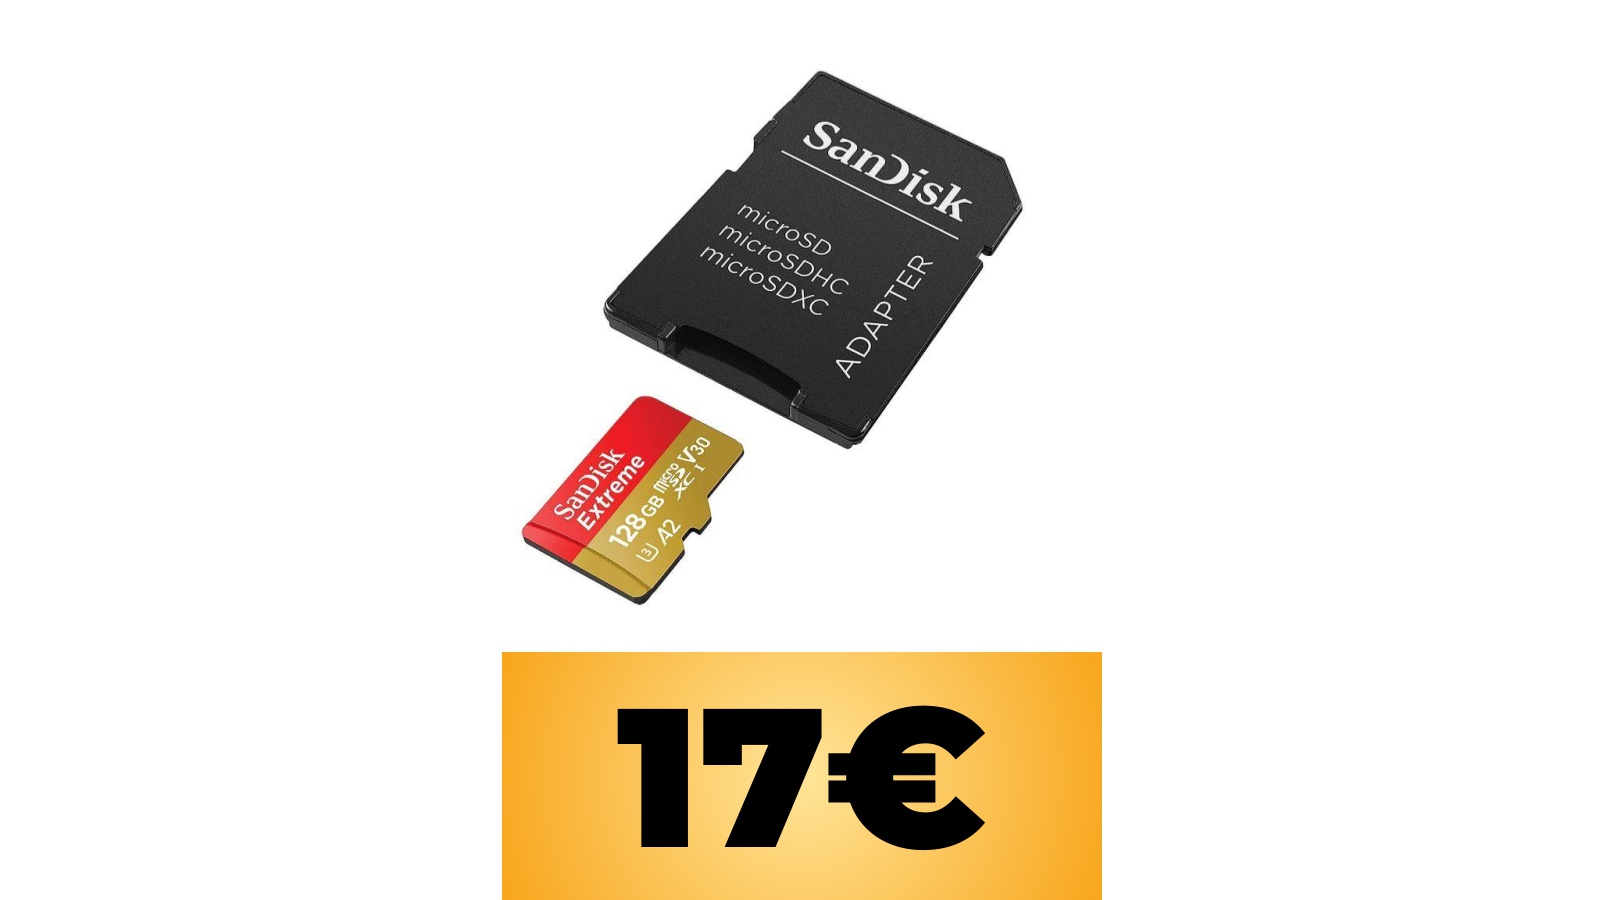 SanDisk Extreme 128 GB per Nintendo Switch, smartphone e non solo in offerta Amazon al prezzo minimo